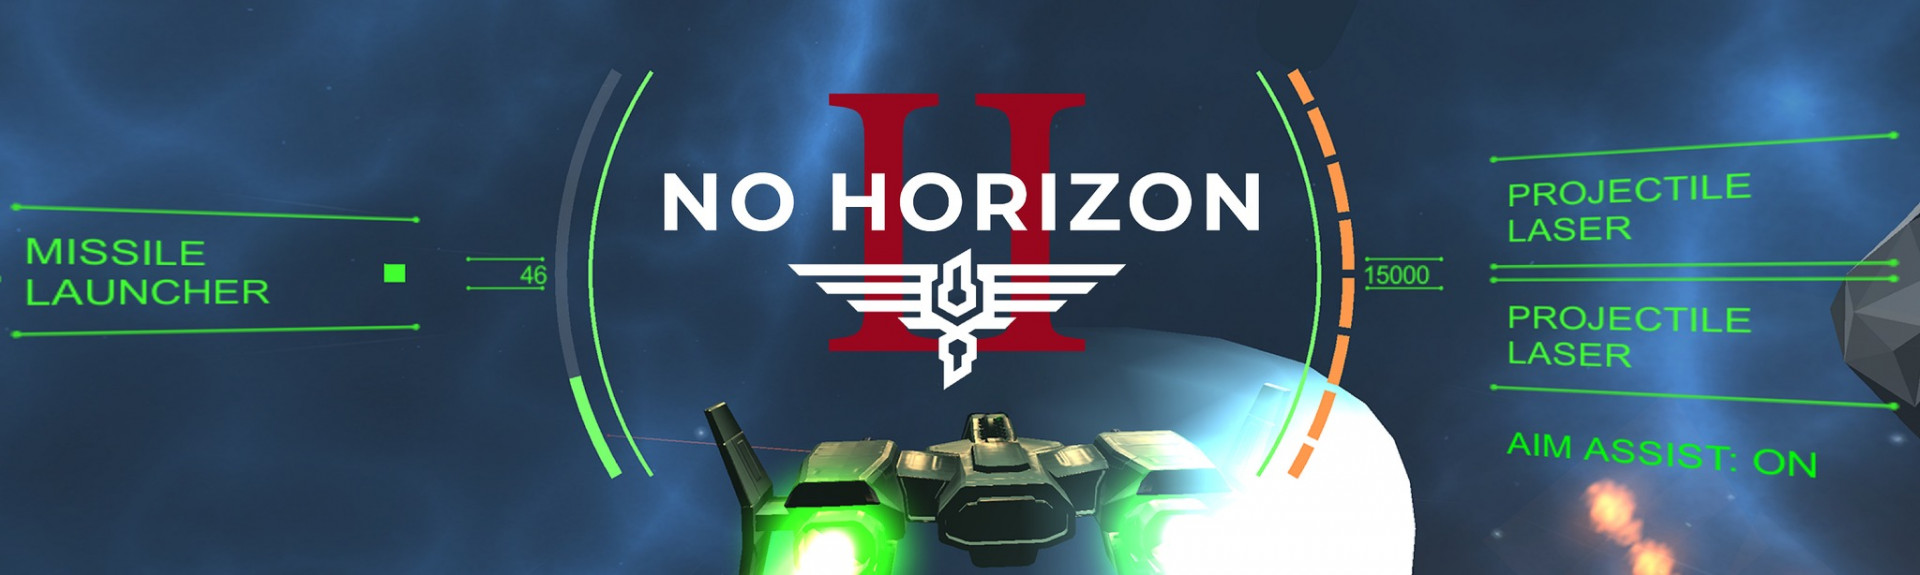 No Horizon 2